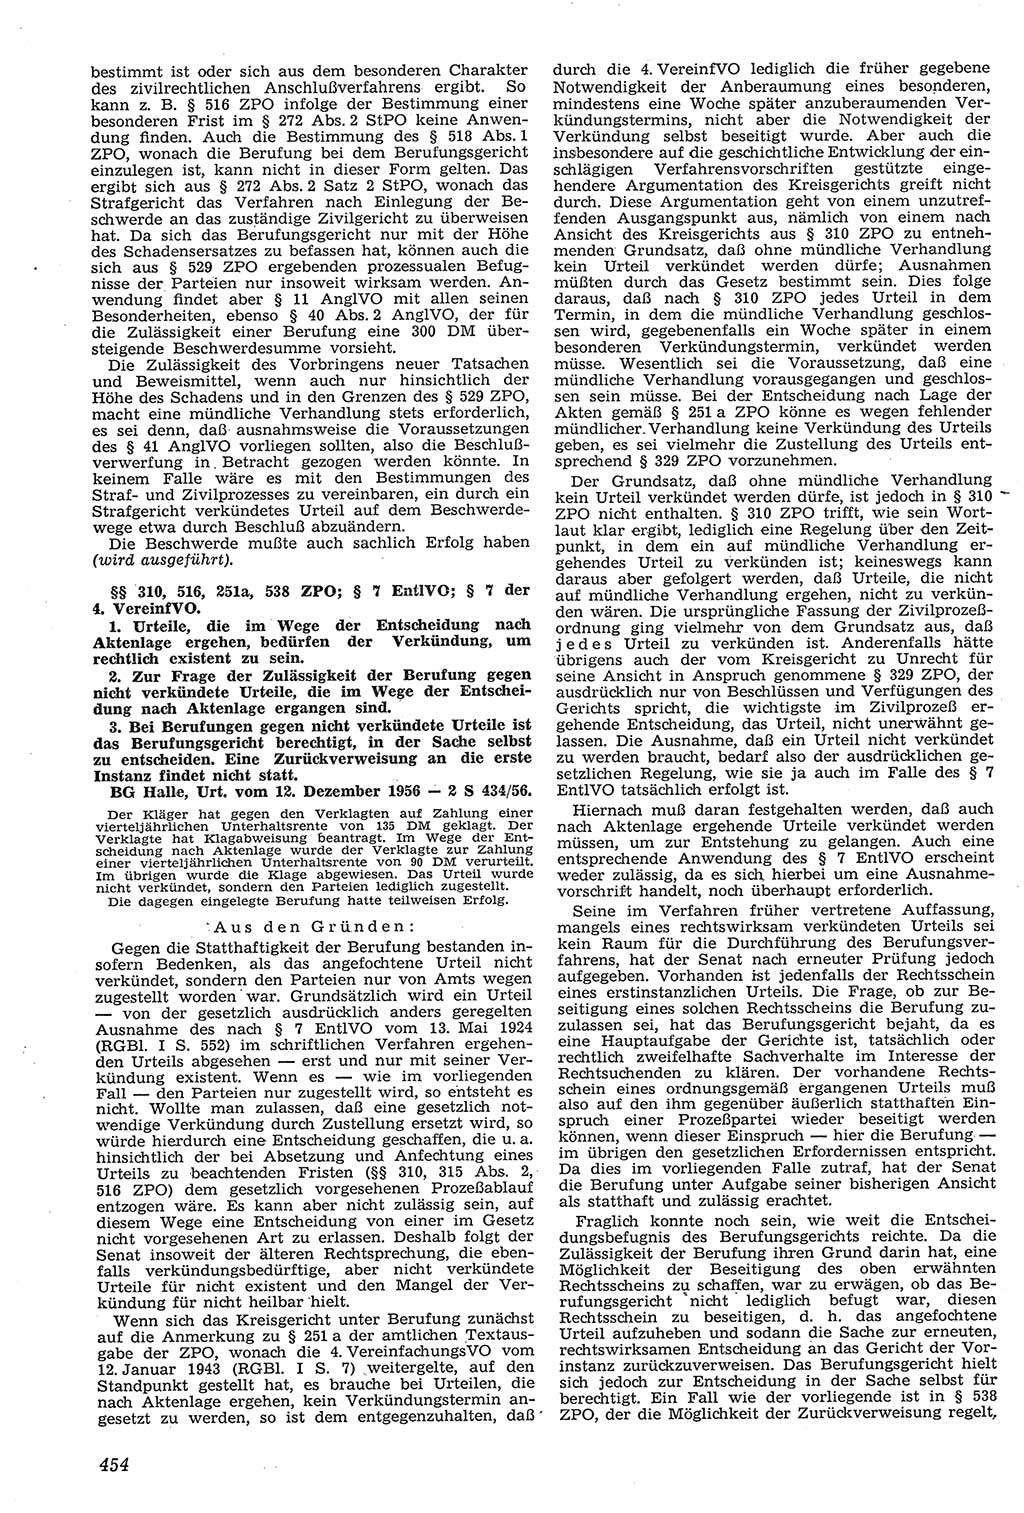 Neue Justiz (NJ), Zeitschrift für Recht und Rechtswissenschaft [Deutsche Demokratische Republik (DDR)], 11. Jahrgang 1957, Seite 454 (NJ DDR 1957, S. 454)